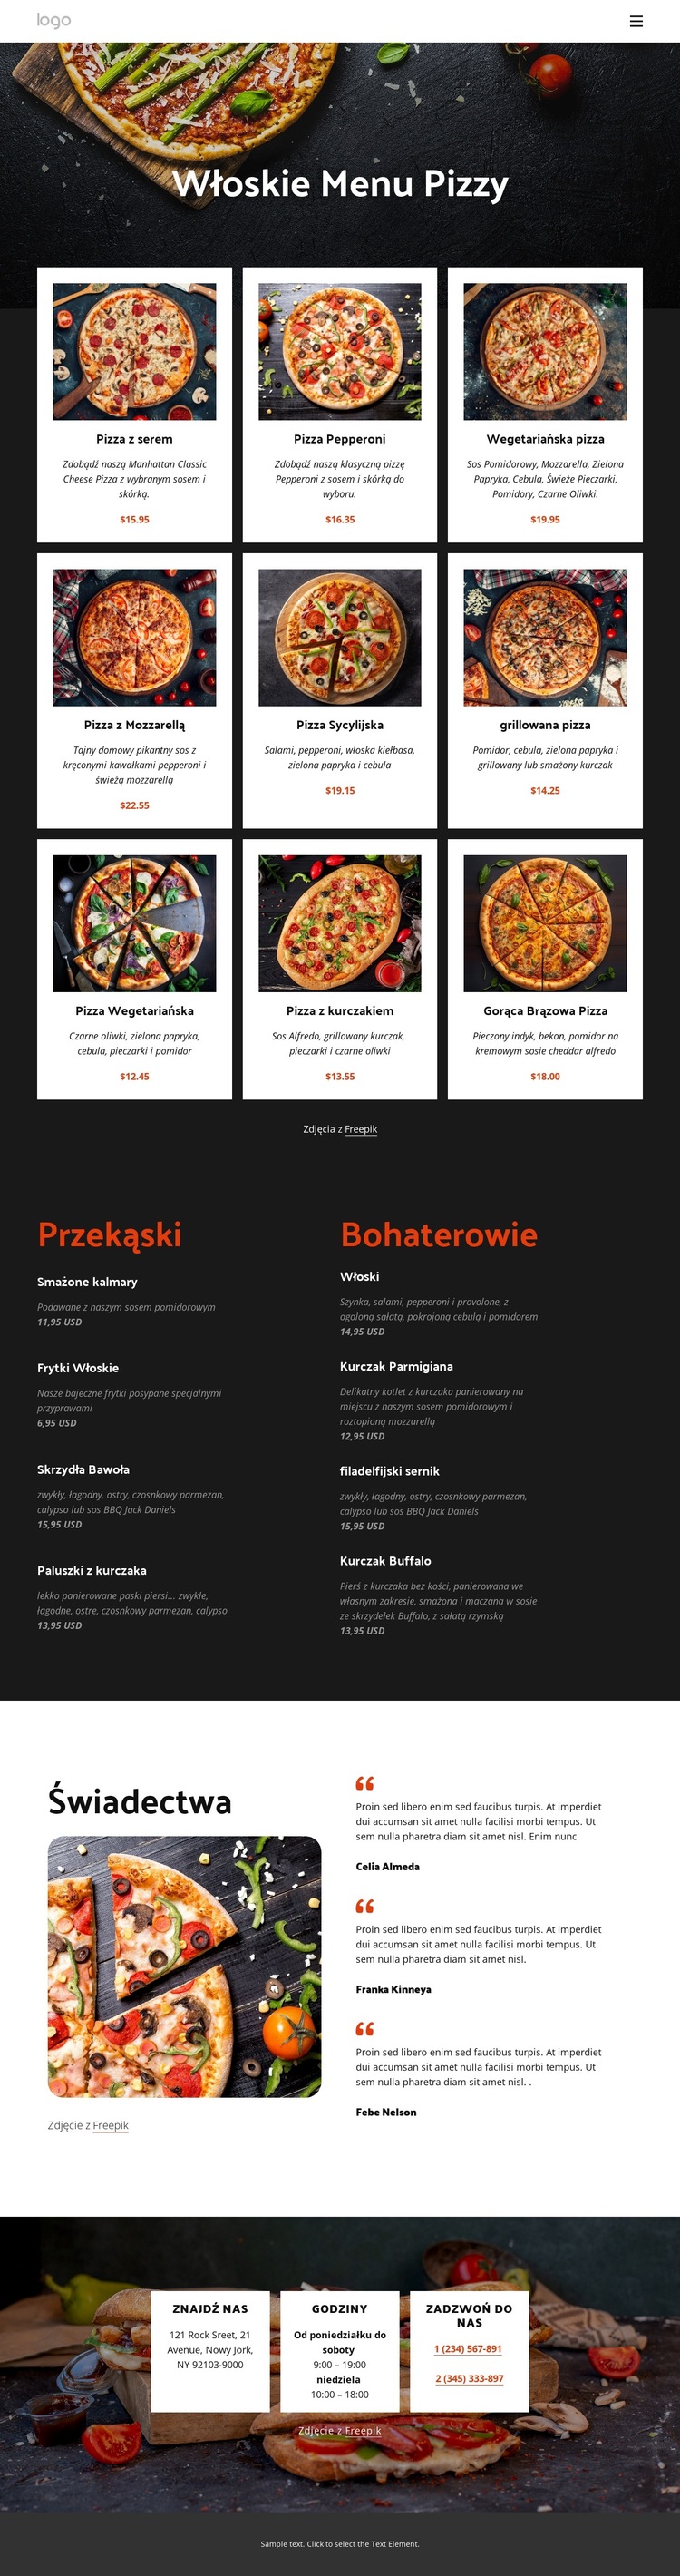 Nasze pizzerie Szablon witryny sieci Web